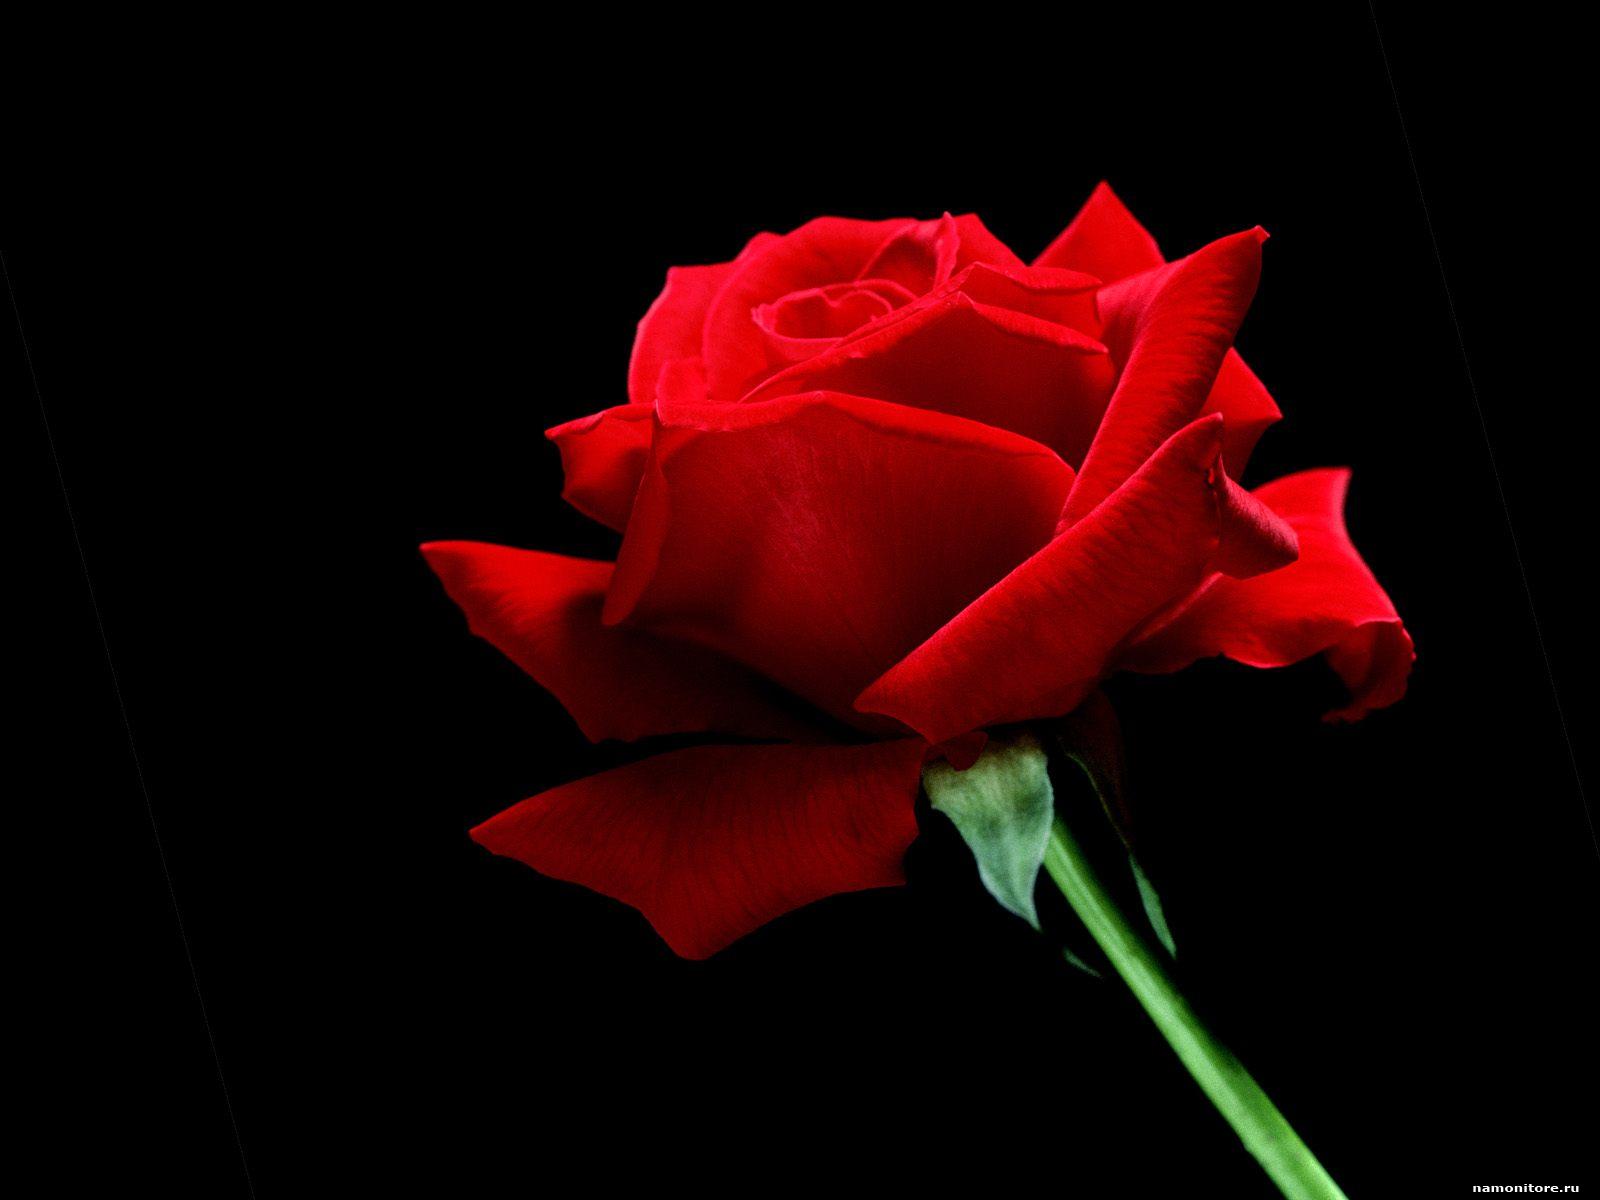 Red Rose On Black Blue Red Rose On Black Blue